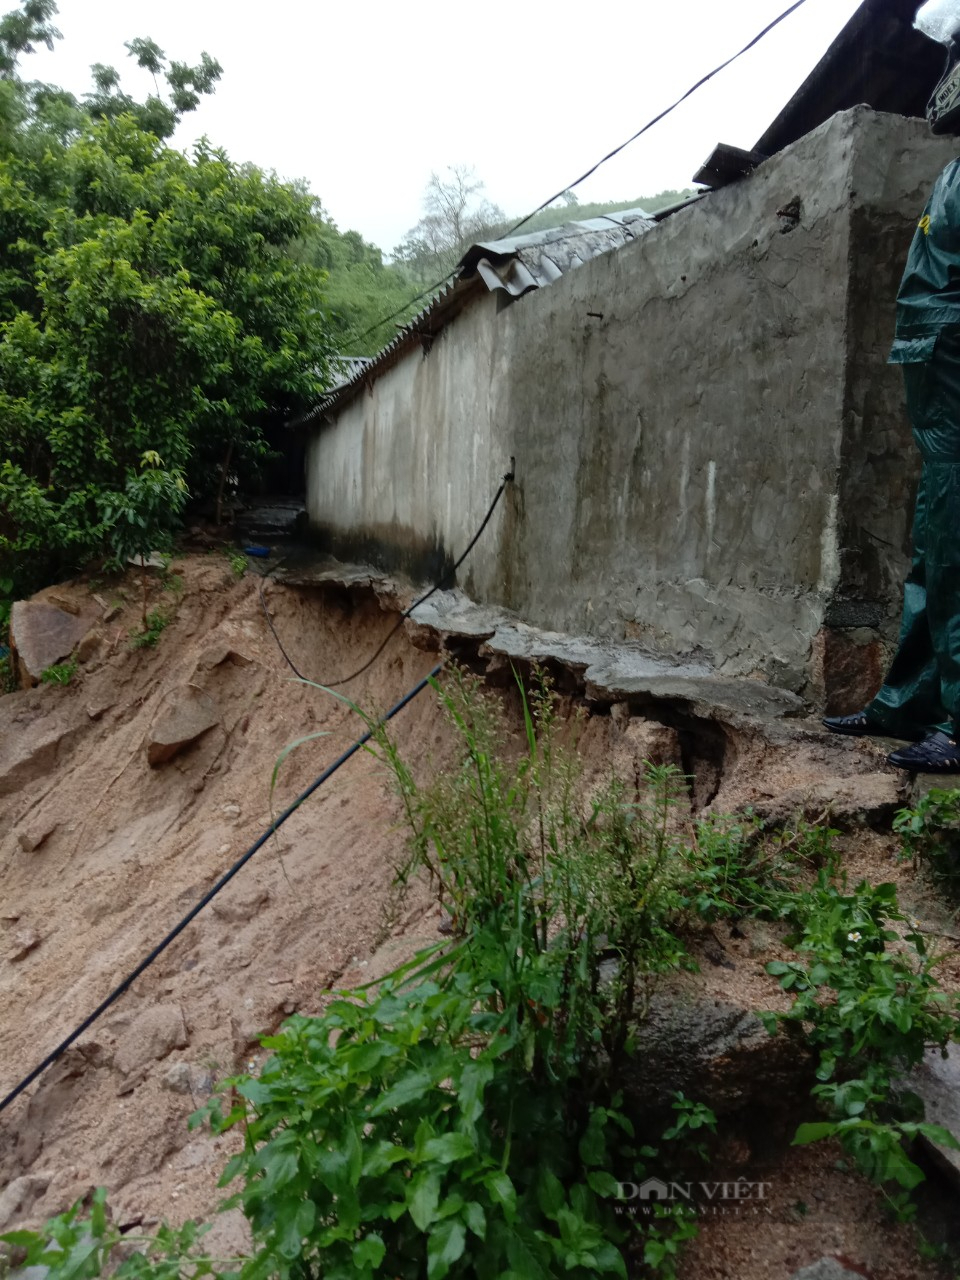 Thanh Hoá: Huyện Mường Lát sơ tán người dân vì mưa lớn gây sạt lở đất ở nhiều nơi - Ảnh 2.